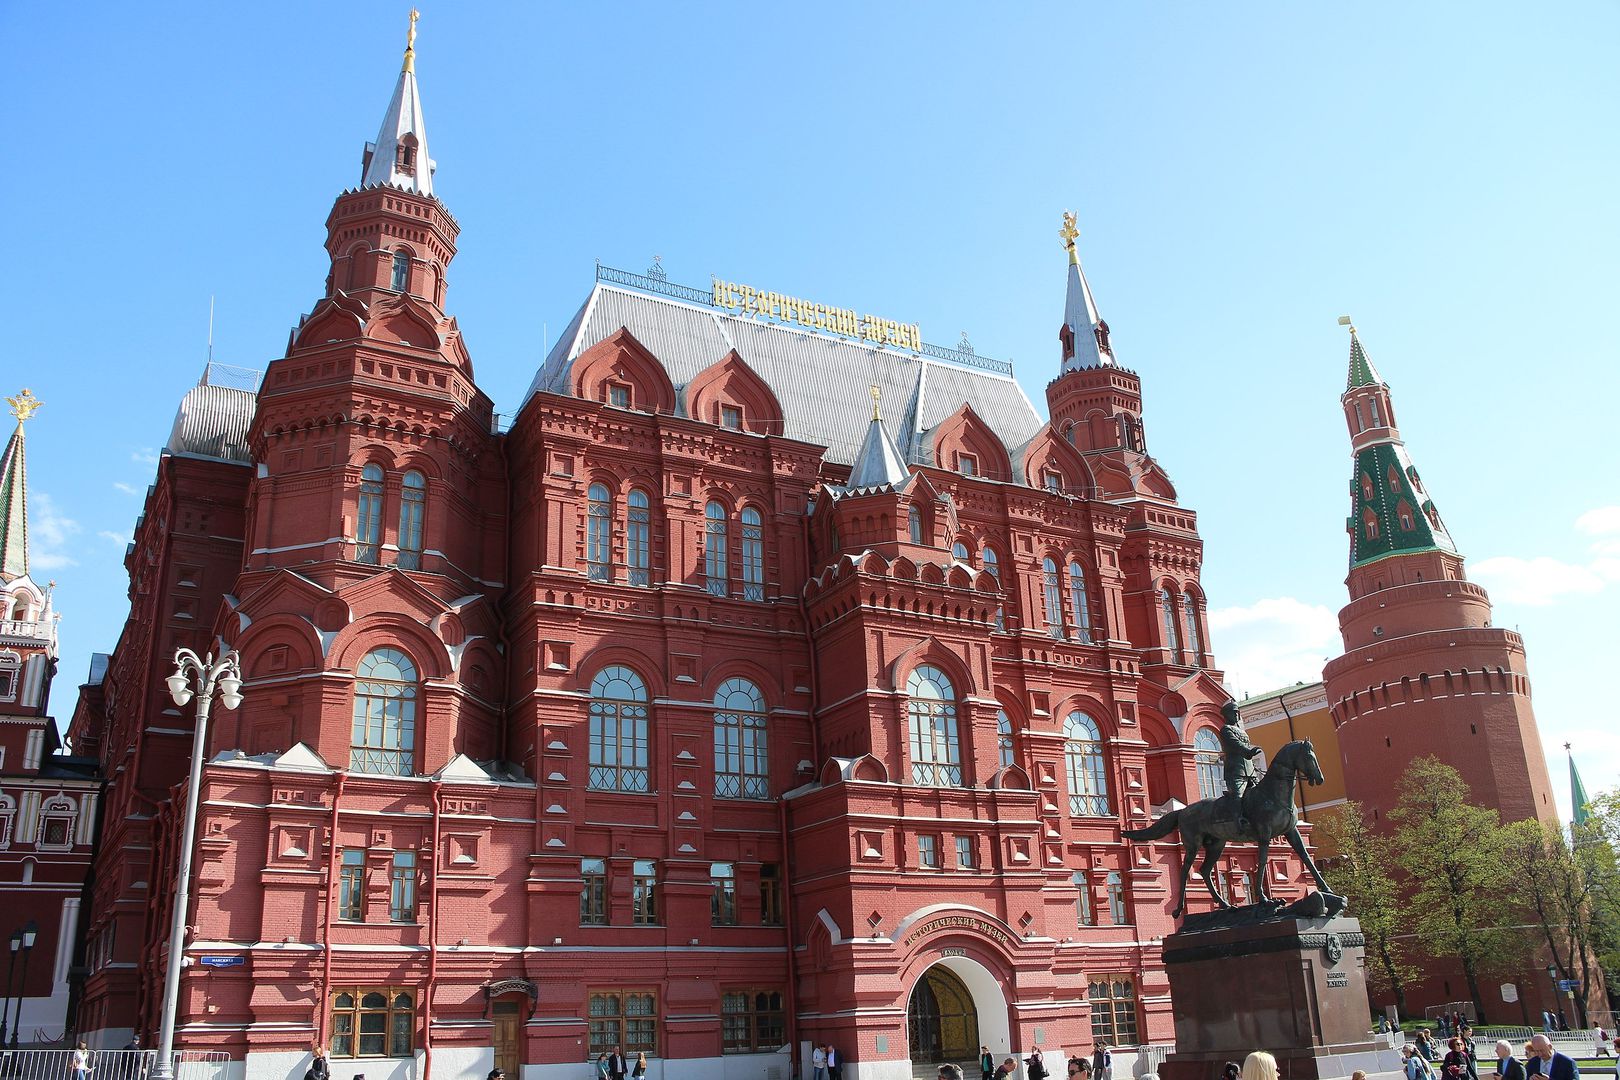 исторический музей в москве на красной площади описание по